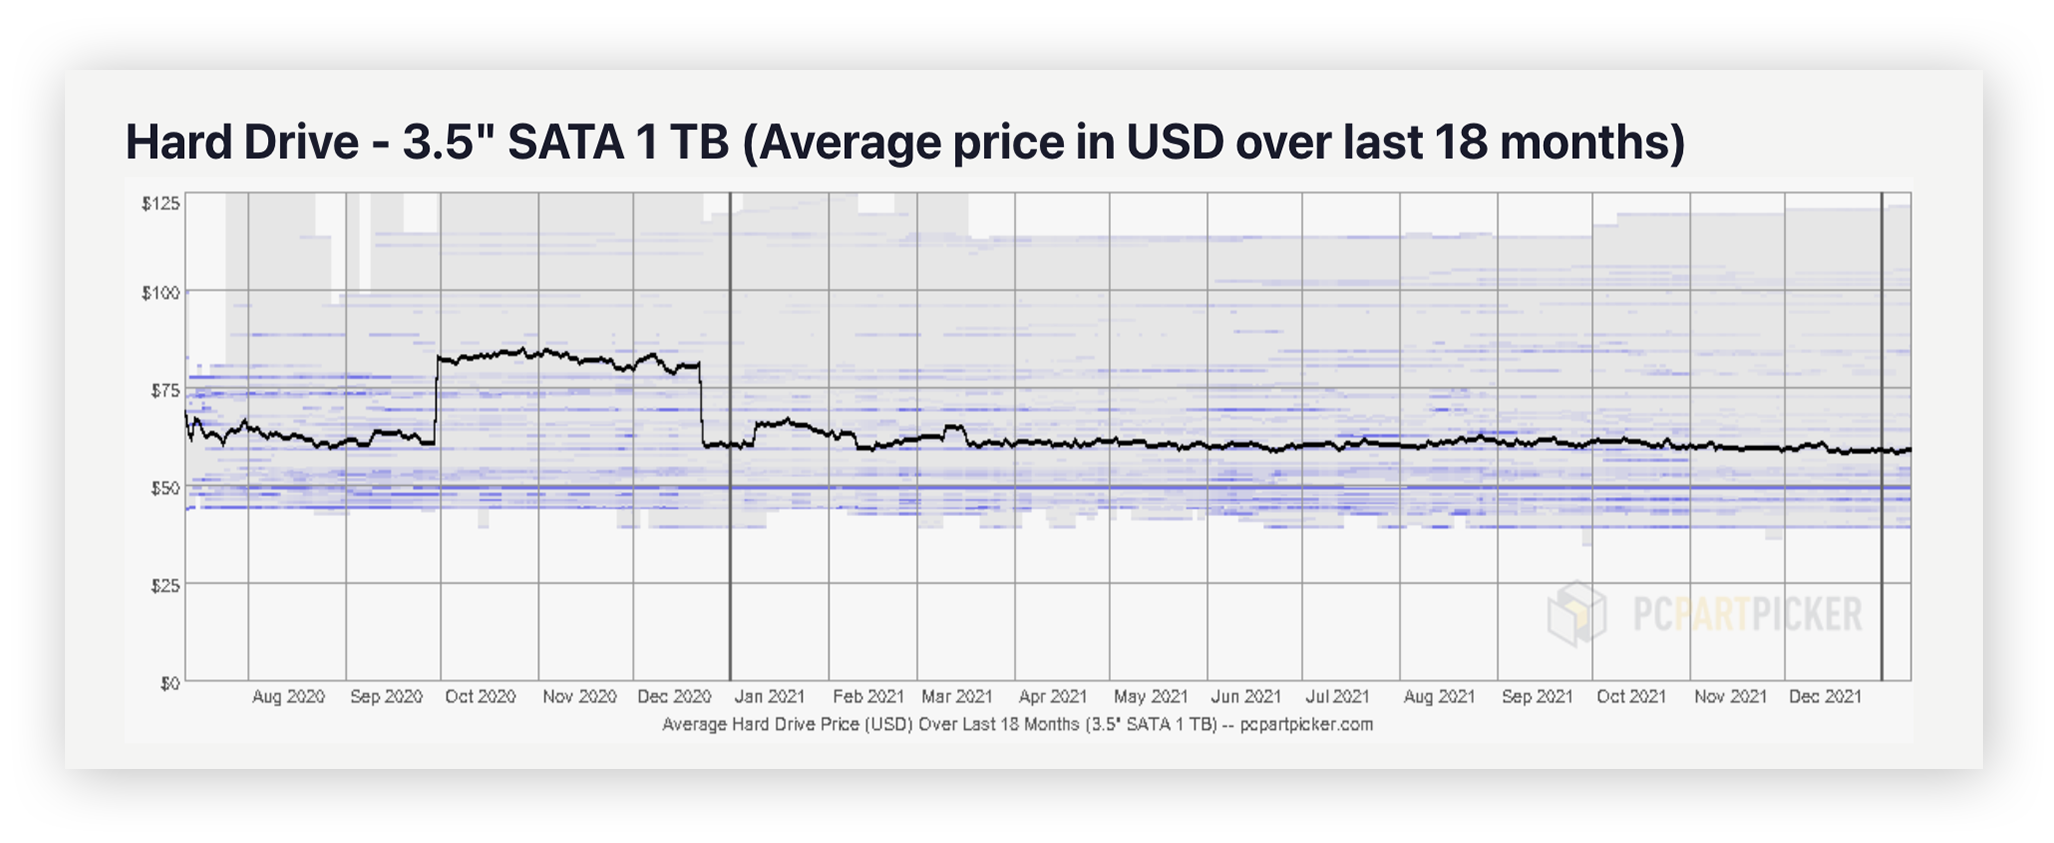 O preço médio de uma HDD de 1 TB SATA 1 de 3,5” de acordo com o PCPartPicker.com